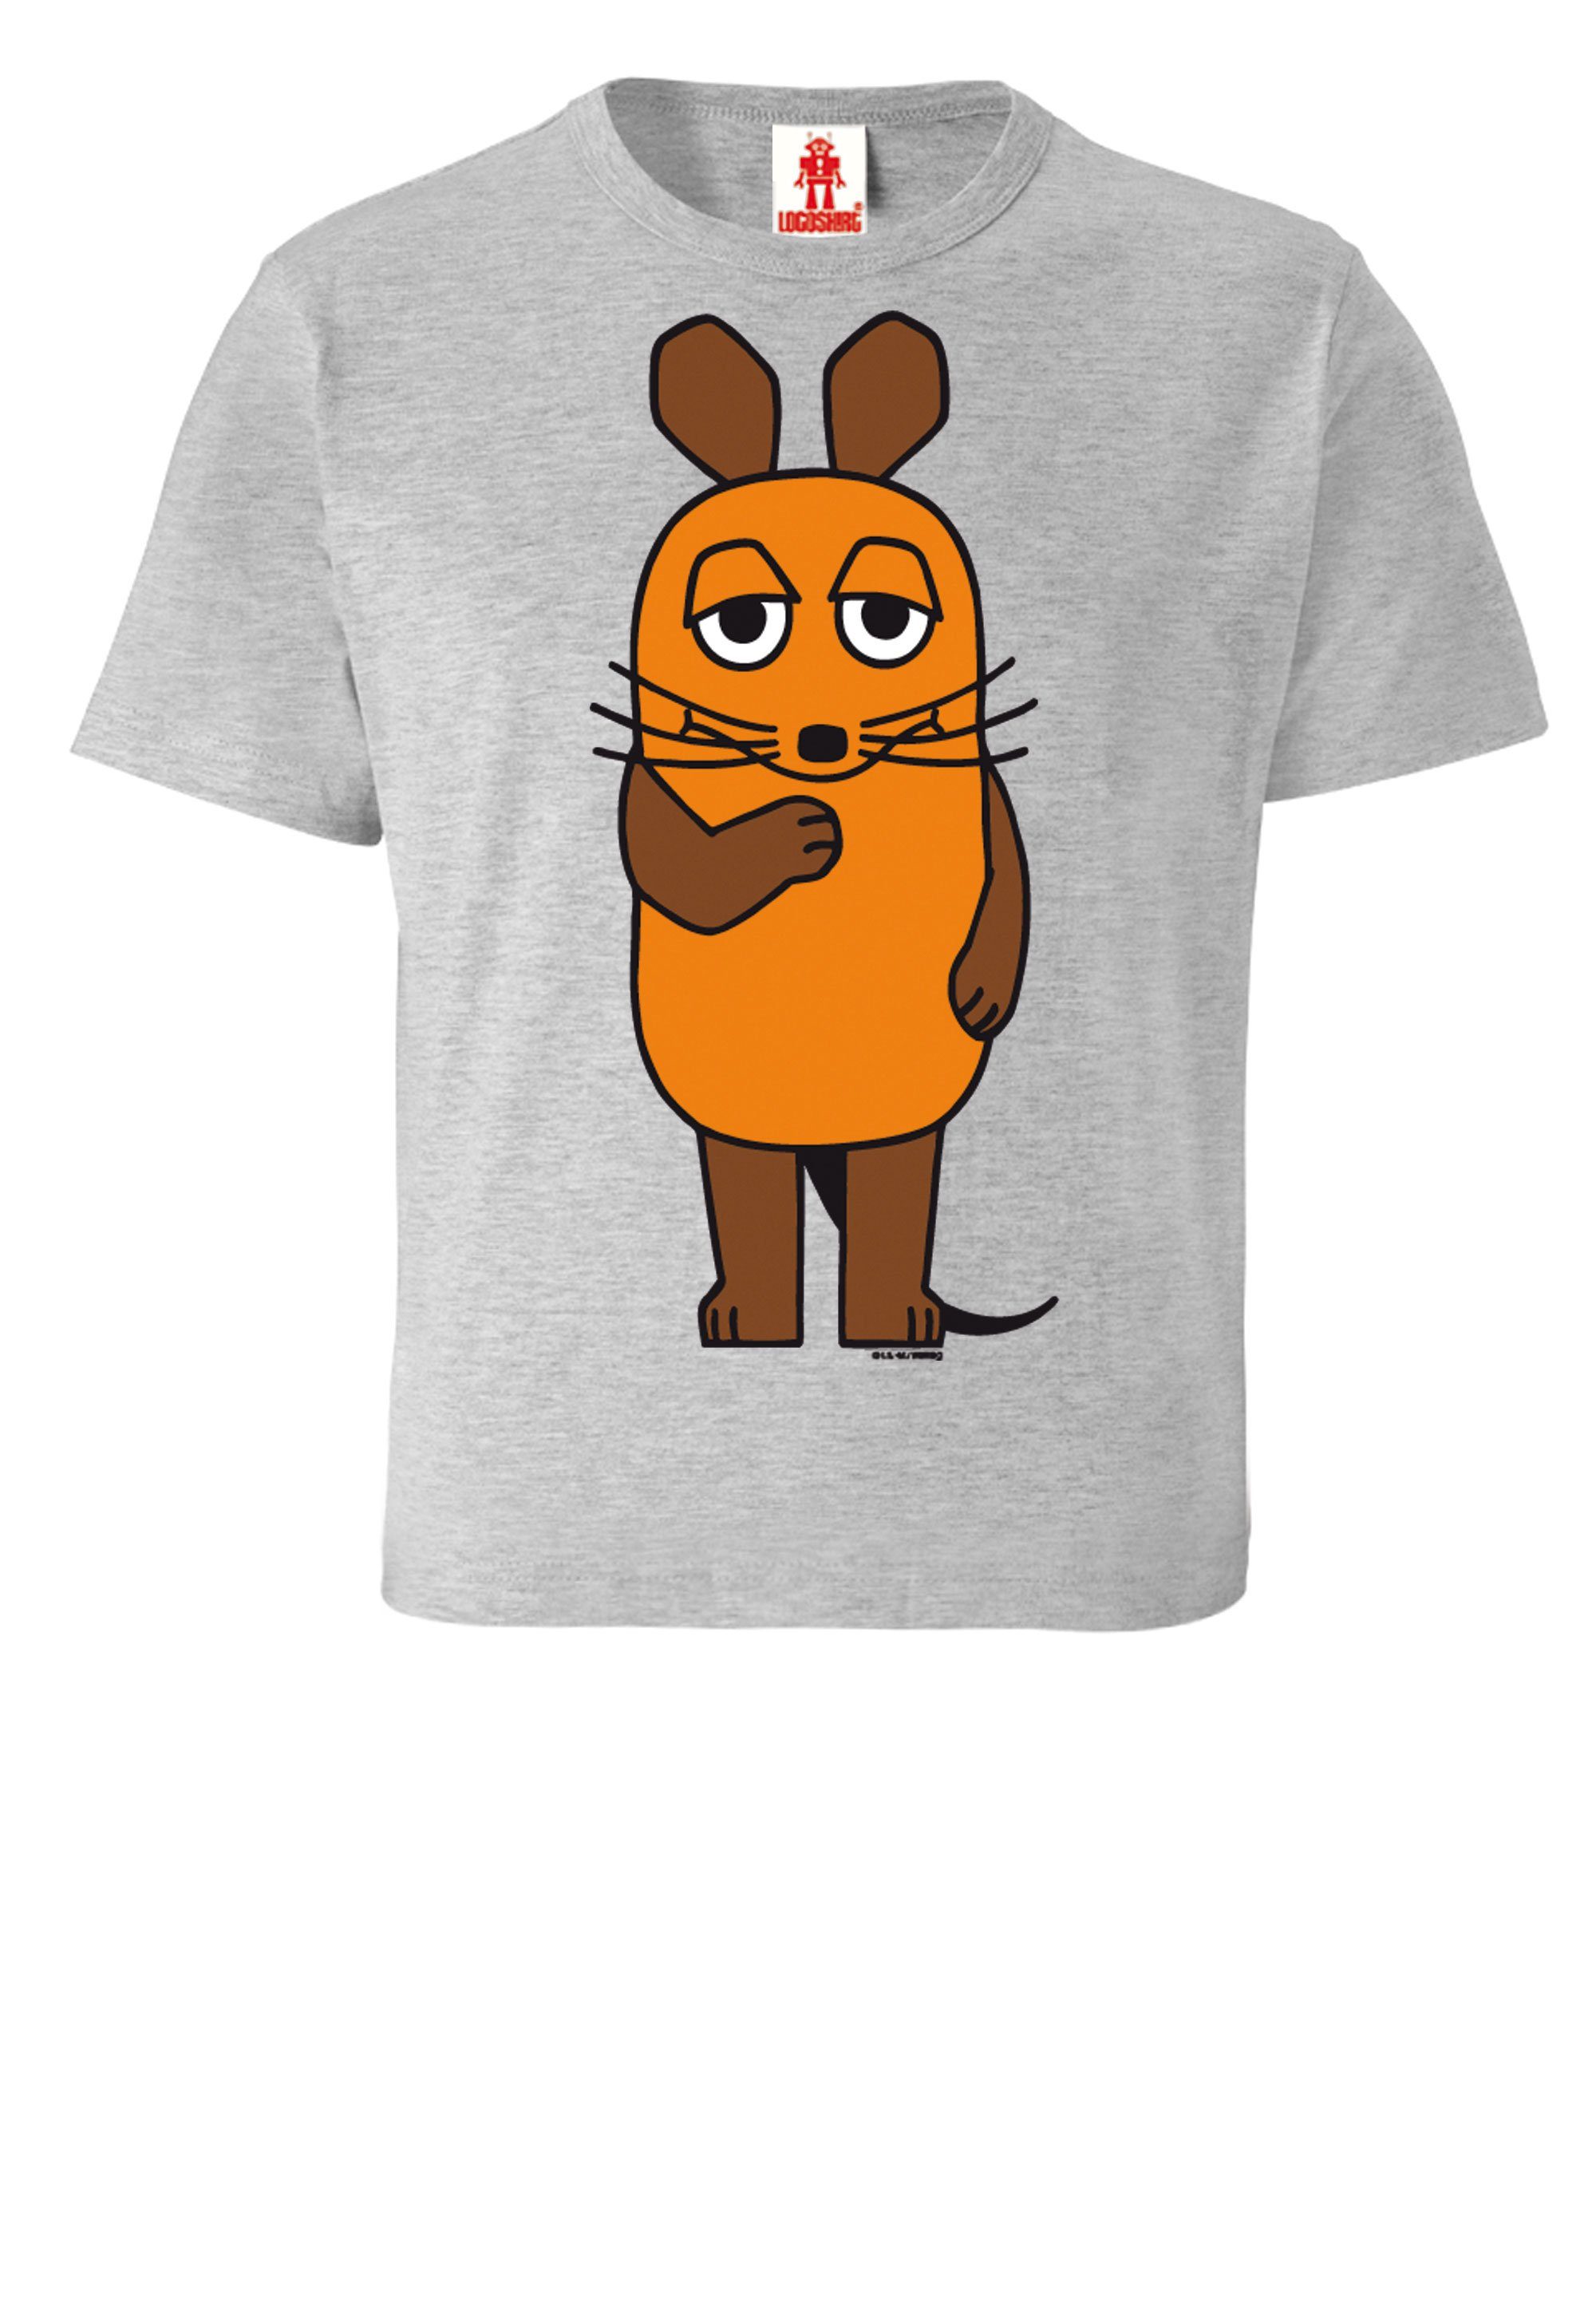 LOGOSHIRT T-Shirt Sendung mit der coolem - Maus Print mit grau-meliert Maus